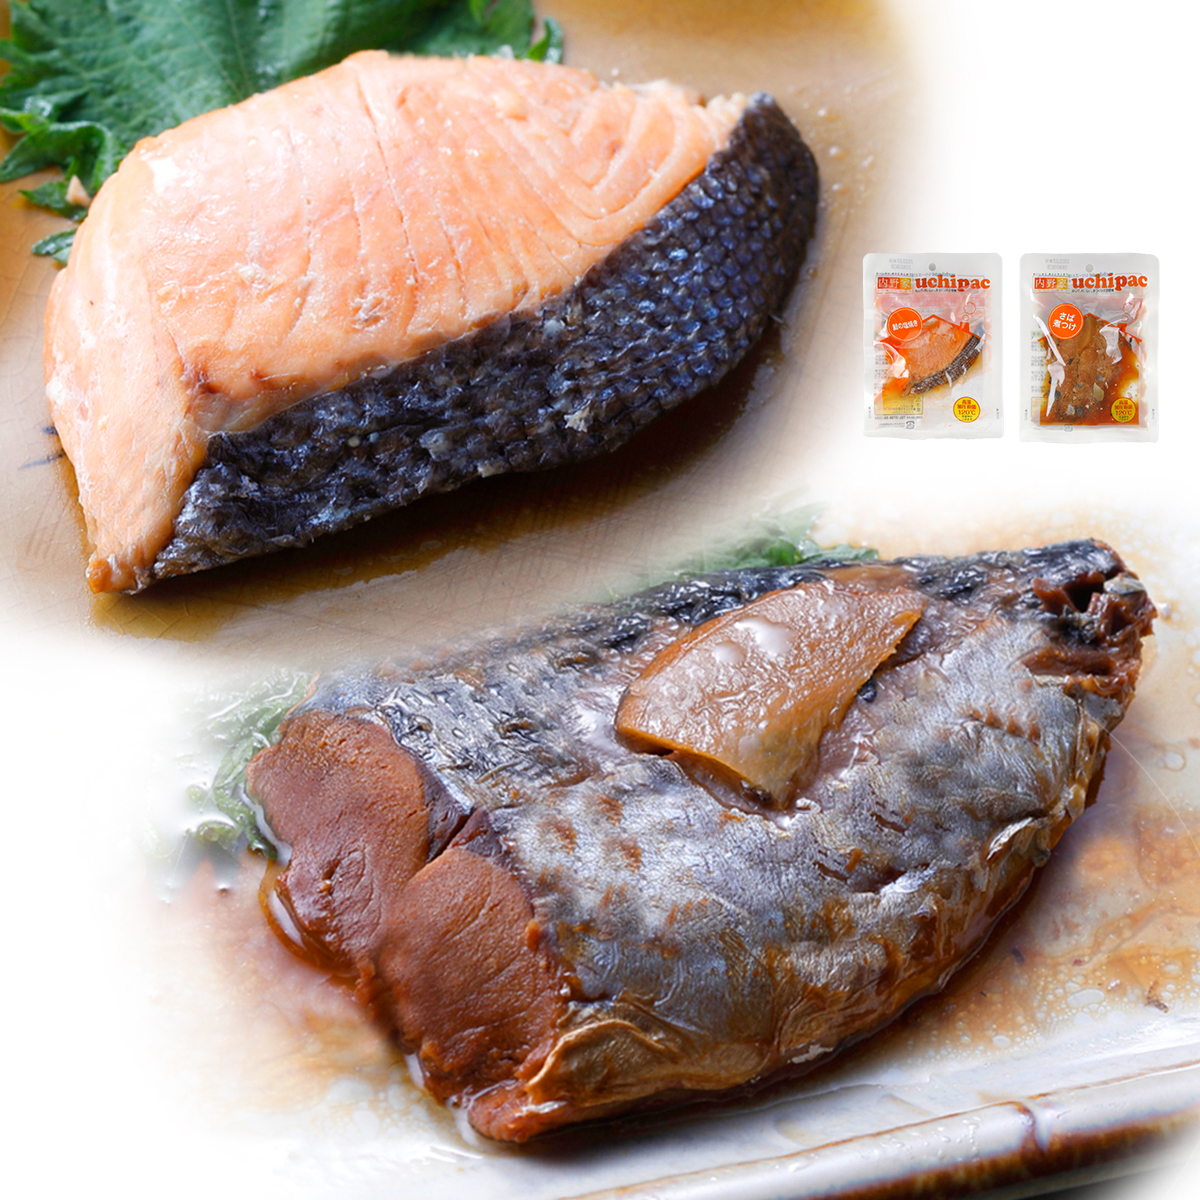 522円 [並行輸入品] ウチノ uchipac 鮭の塩焼き 4パックセット